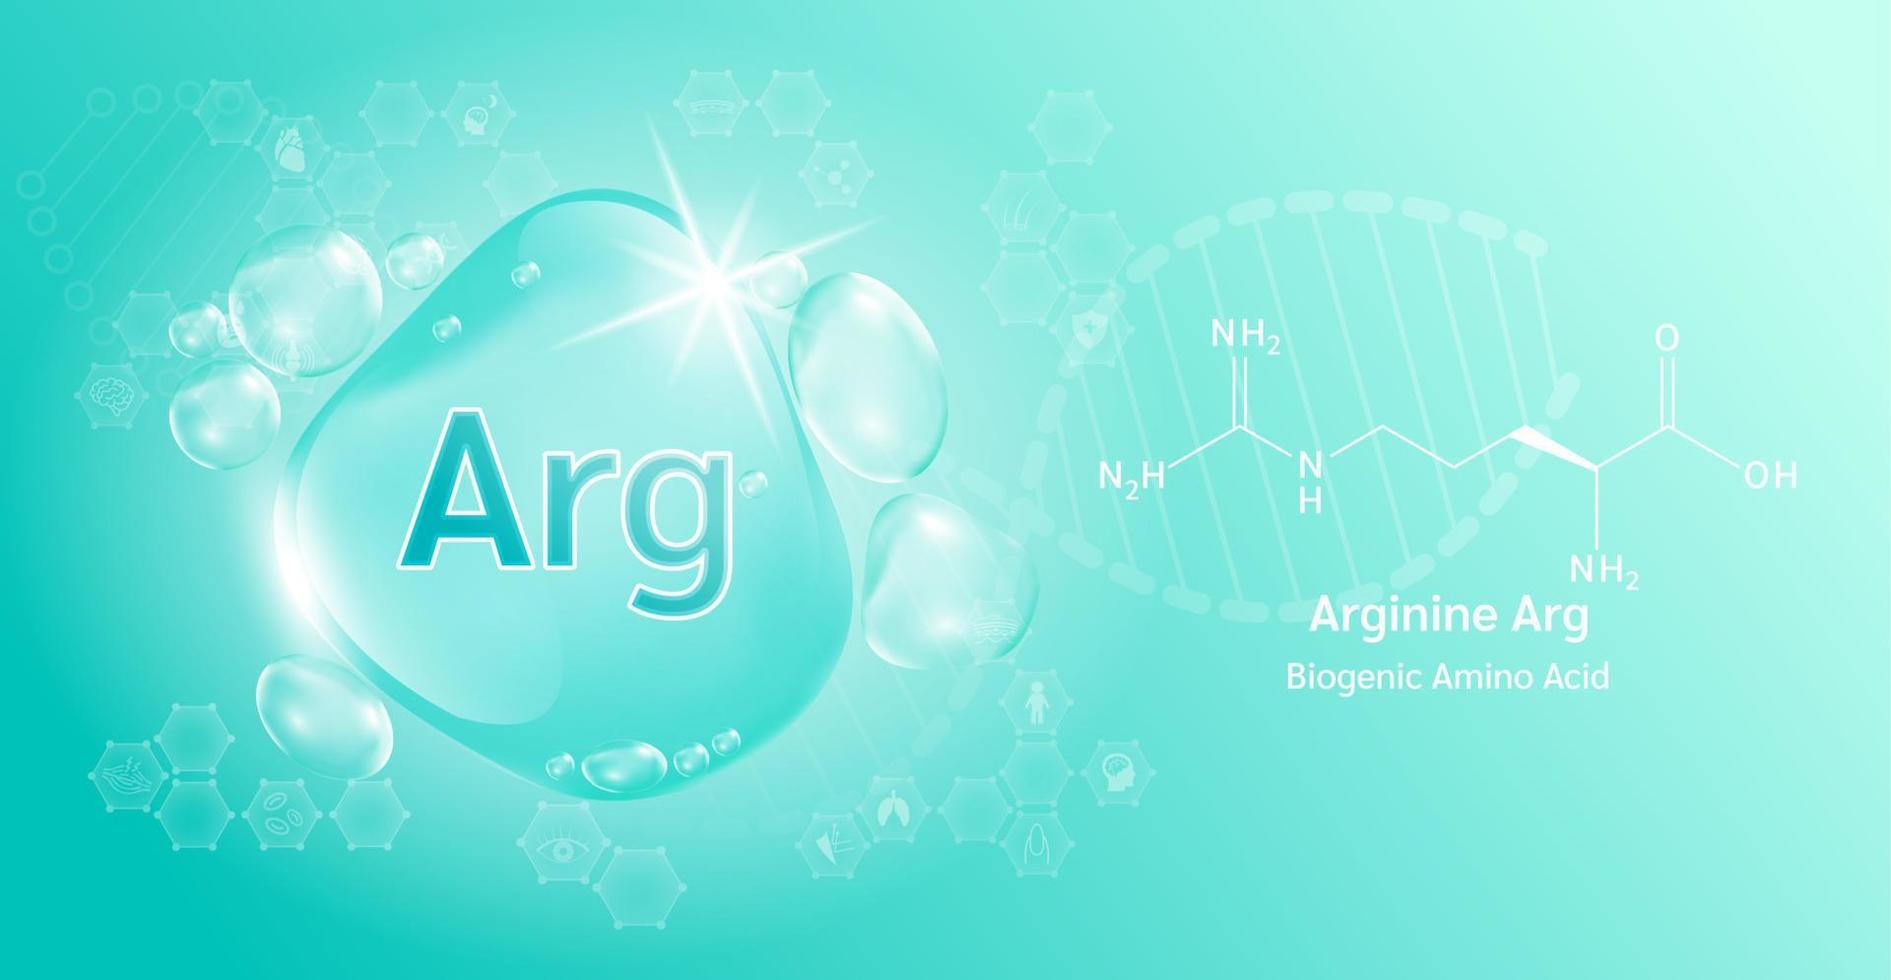 waterdruppel belangrijk aminozuur arginine arg en structurele chemische formule. arginine op een groene achtergrond. medische en wetenschappelijke concepten. 3D-vectorillustratie. vector